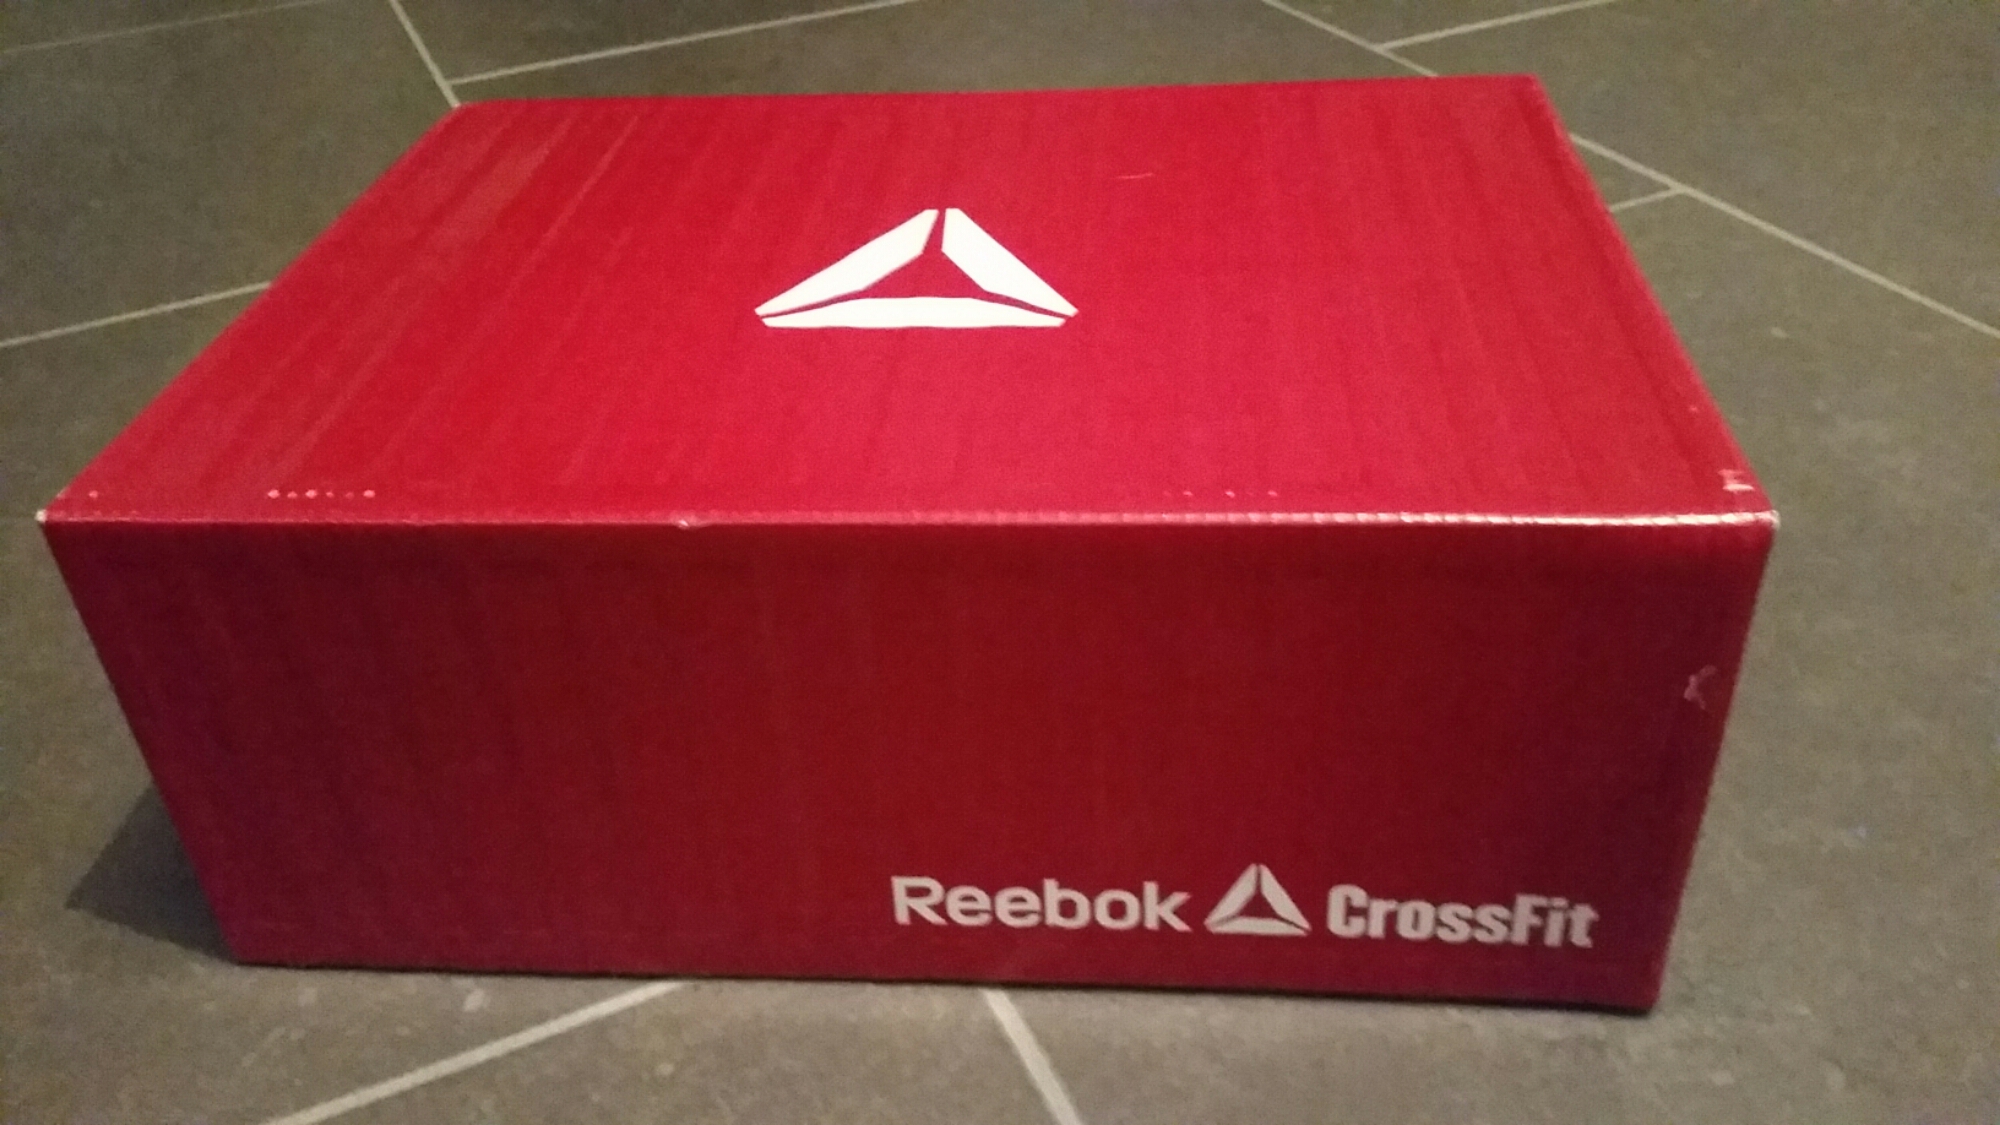 the box reebok